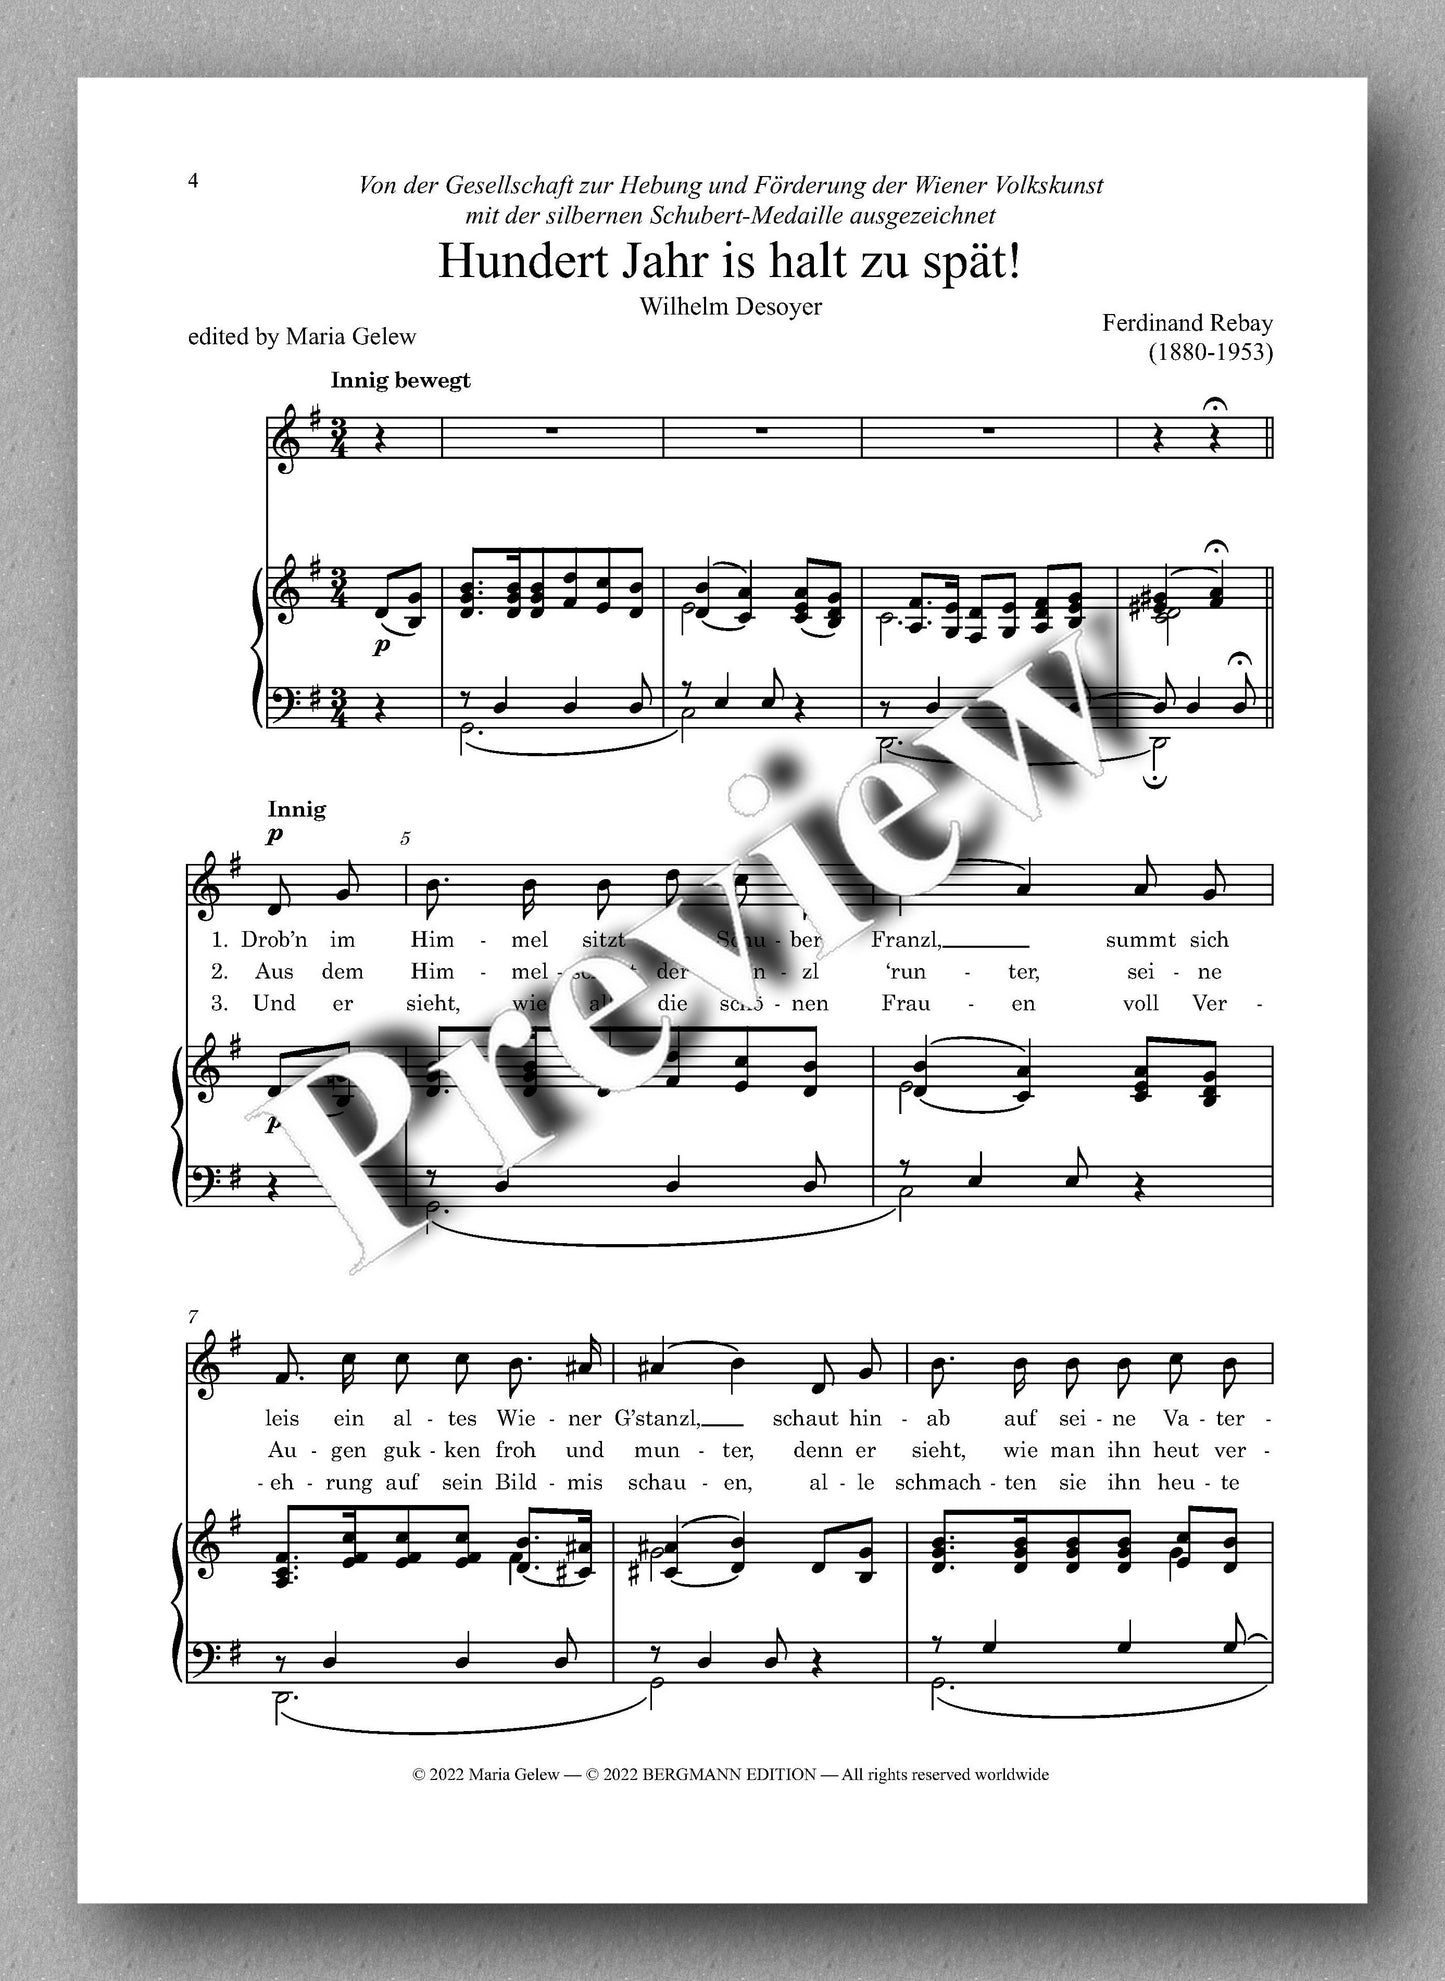 Ferdinand Rebay, Lieder nach Gedichten von Wilhelm Desoyer - preview of the music score 1